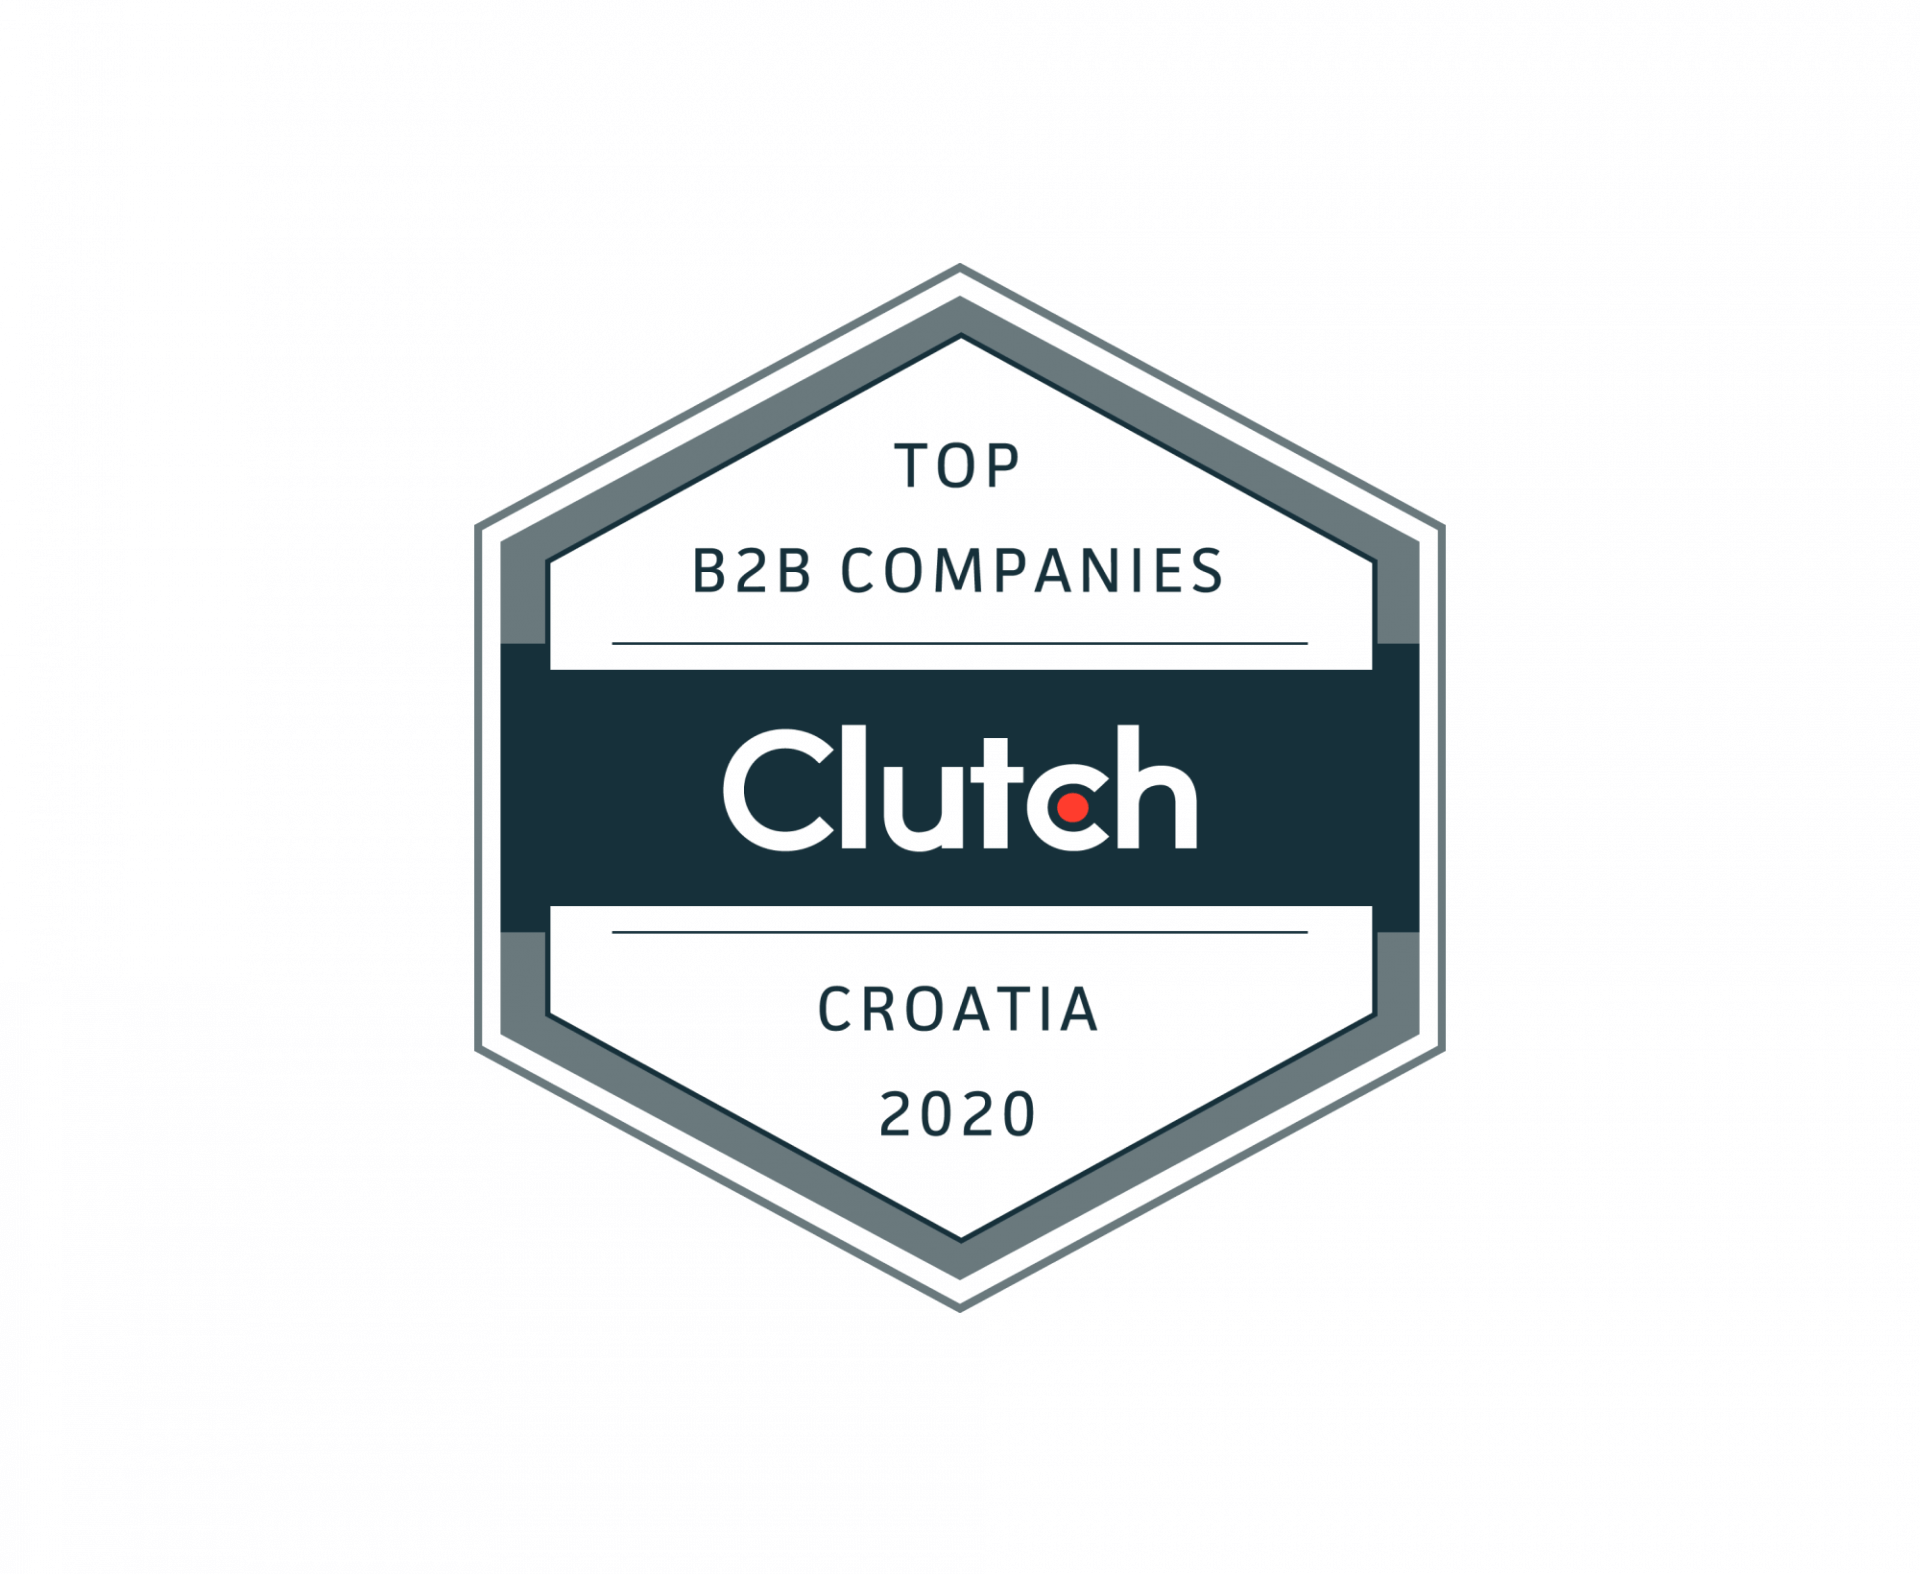 WE are among the Top Croatian B2B Companies